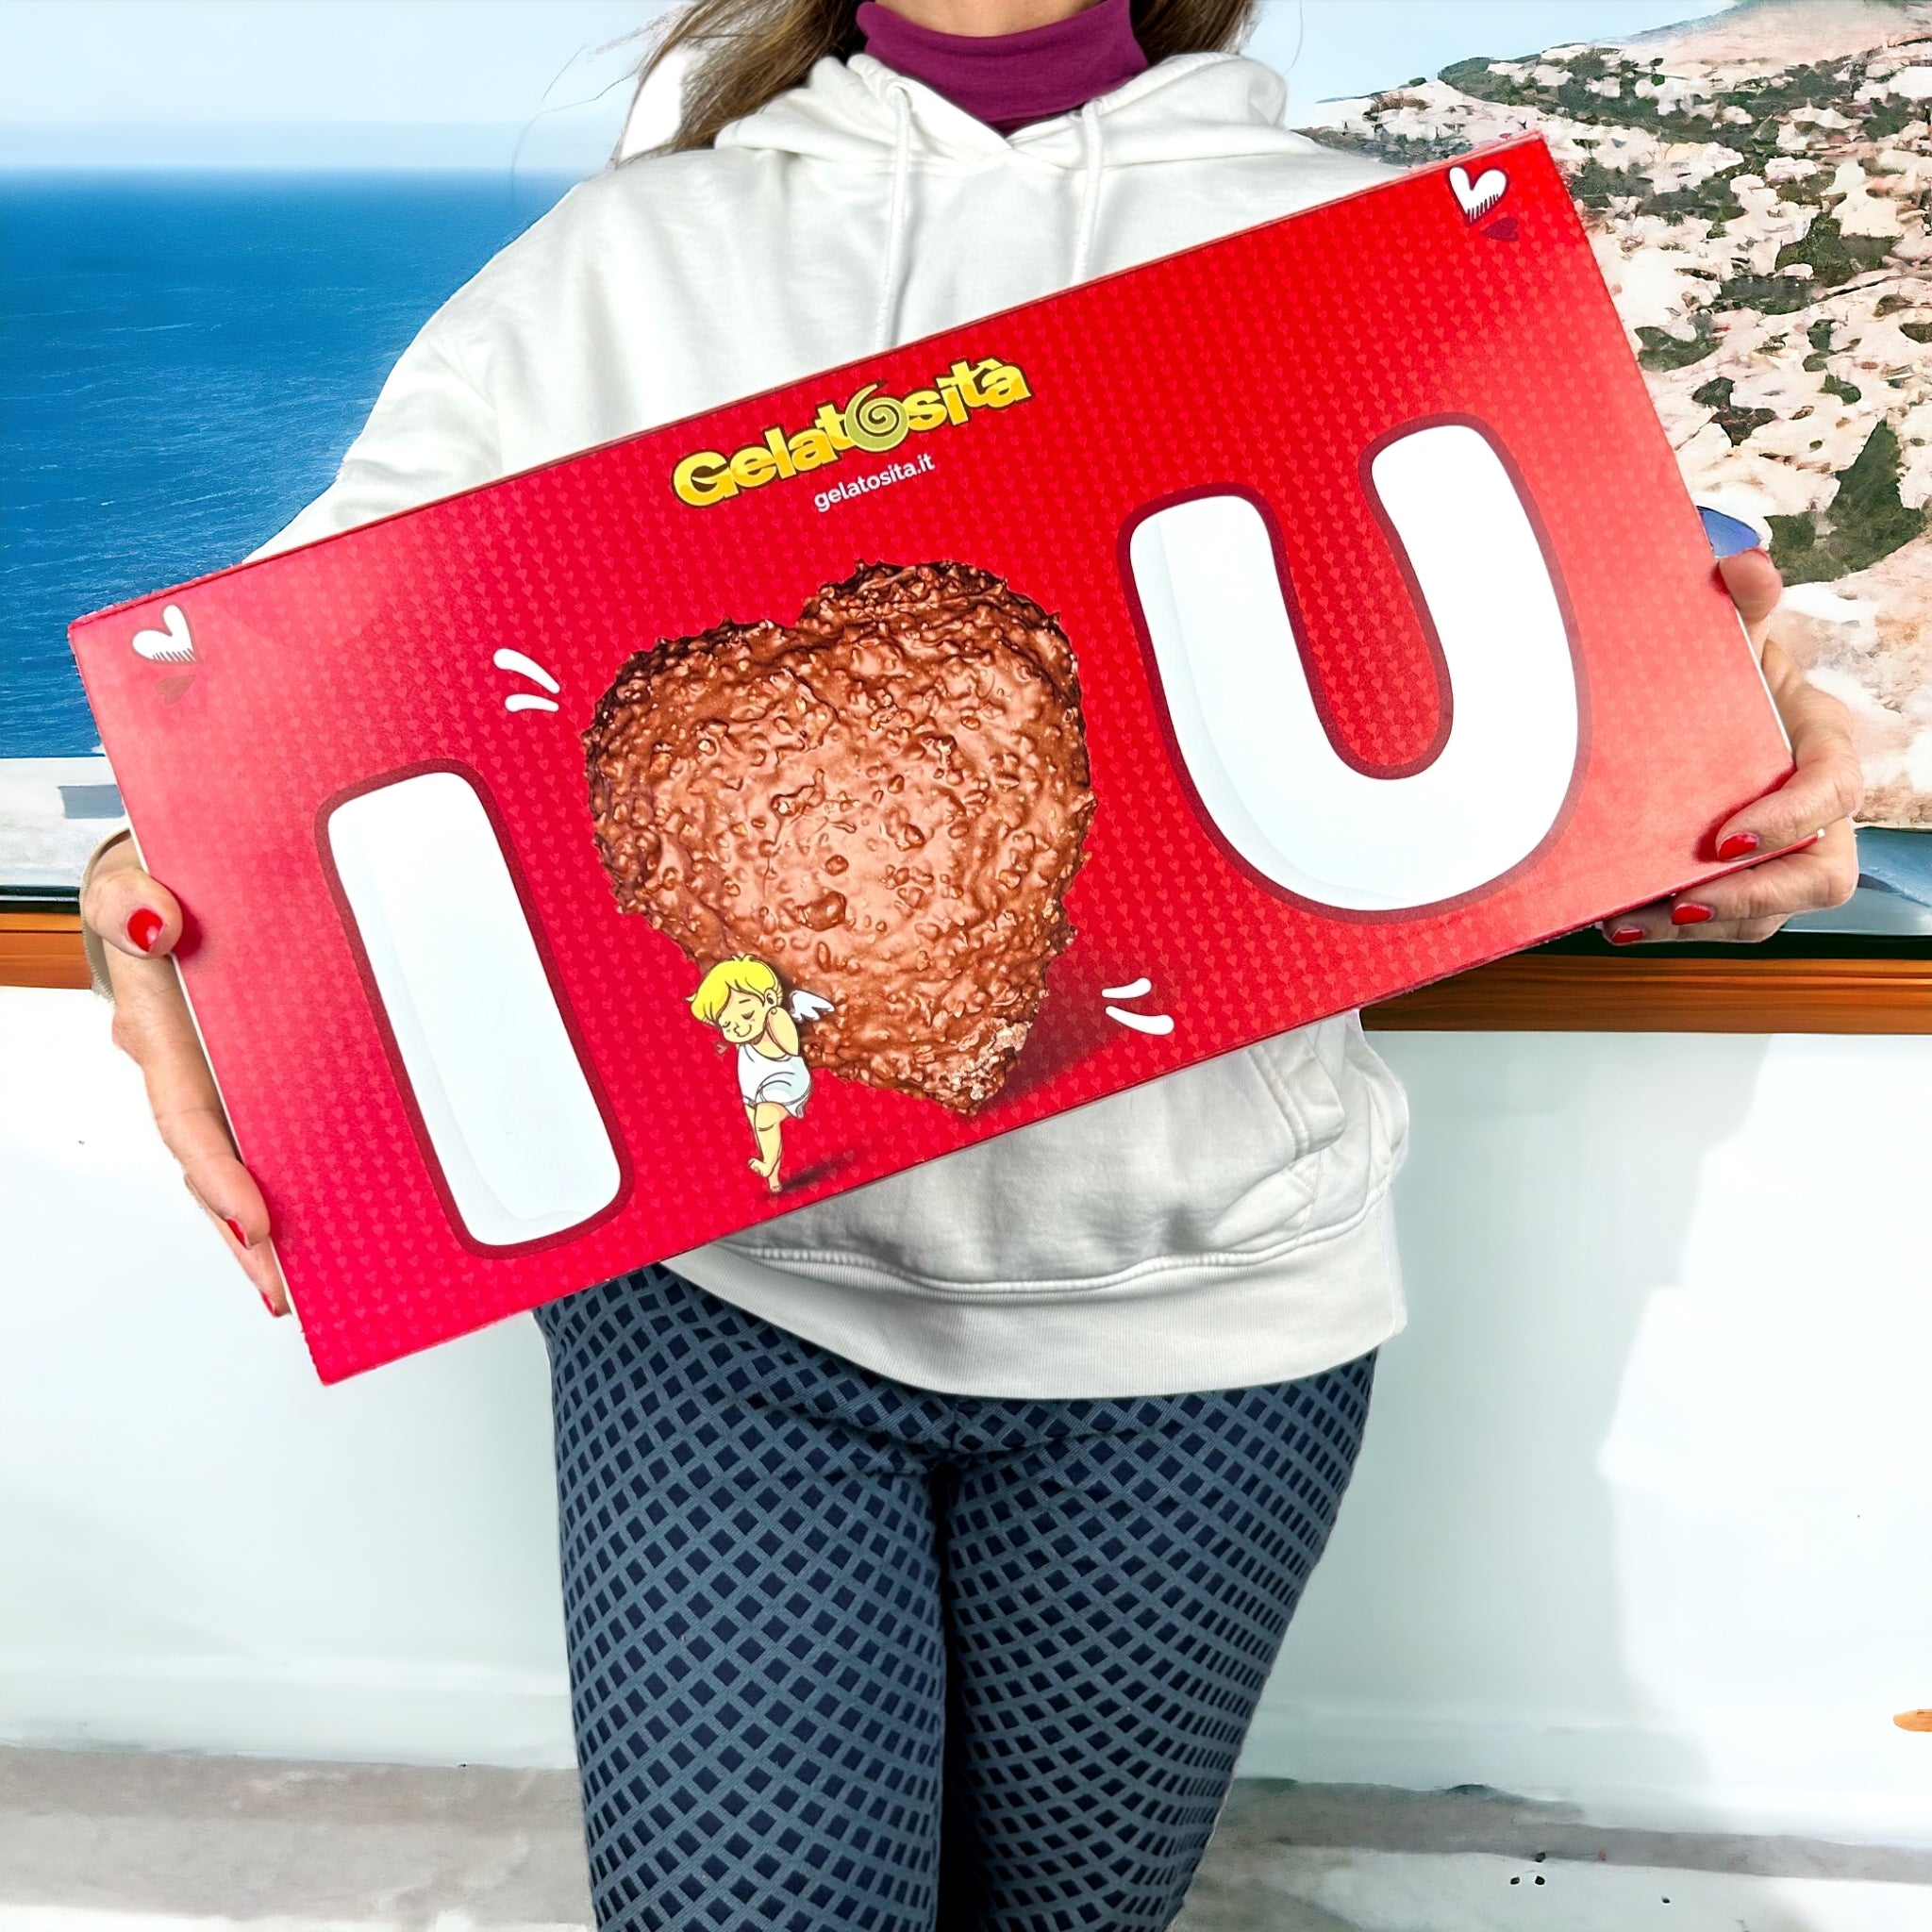 BOX I-LOVE-YOU cuore Fondente ripieno + 5 creme + 2 cioccolatini + rosa e dedica (Lim. Edition)